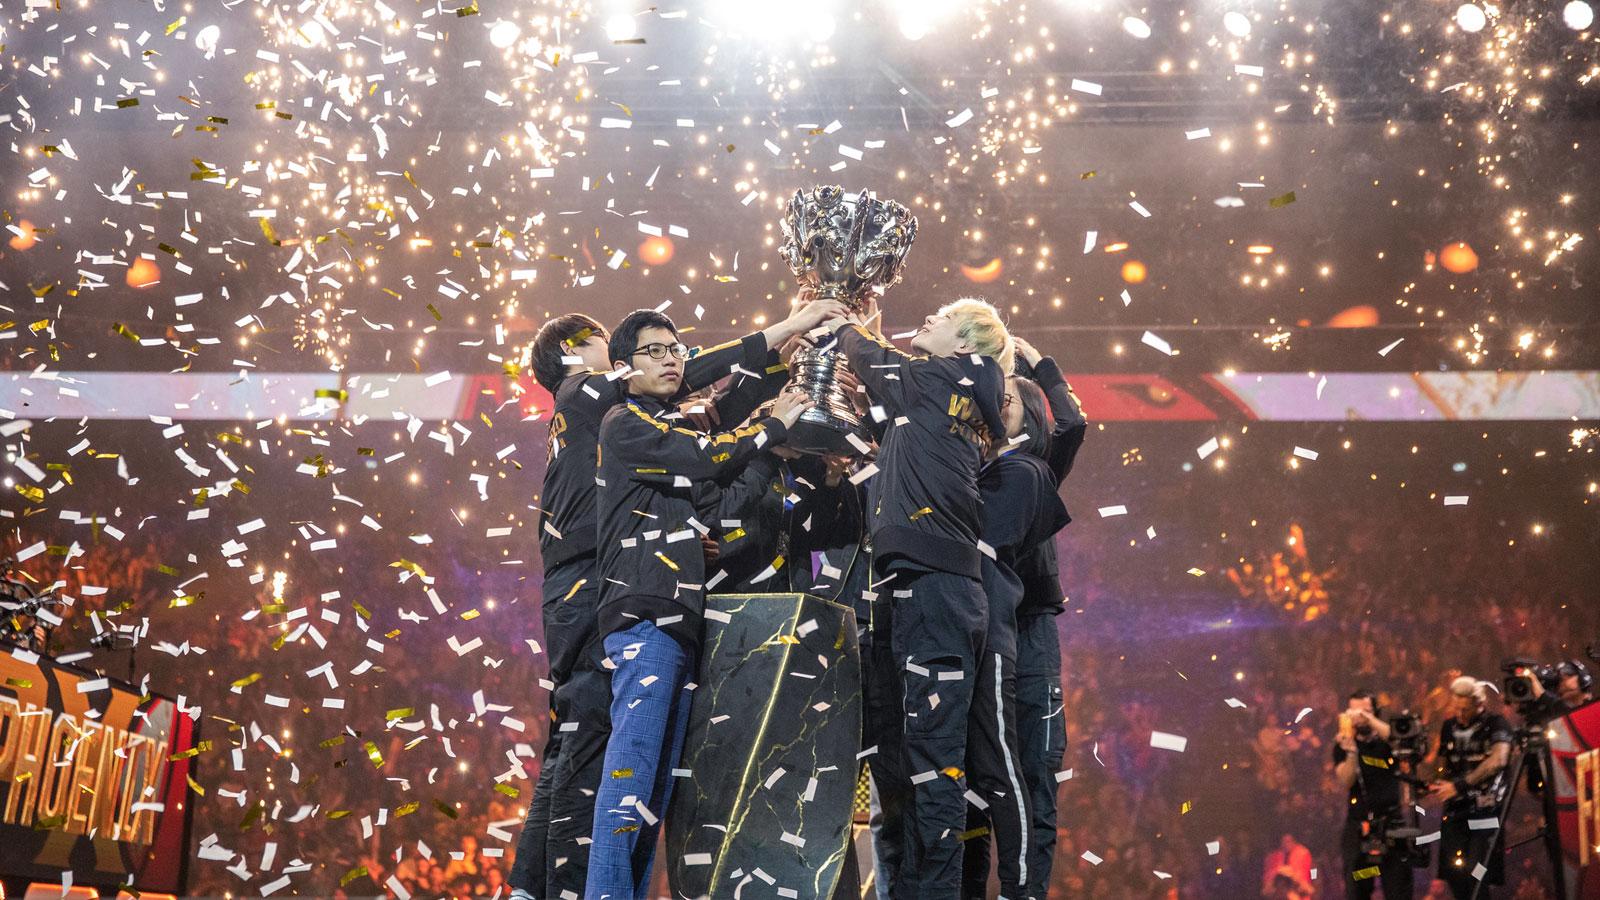 FPX vainqueurs Worlds League of Legends soulèvent la coupe